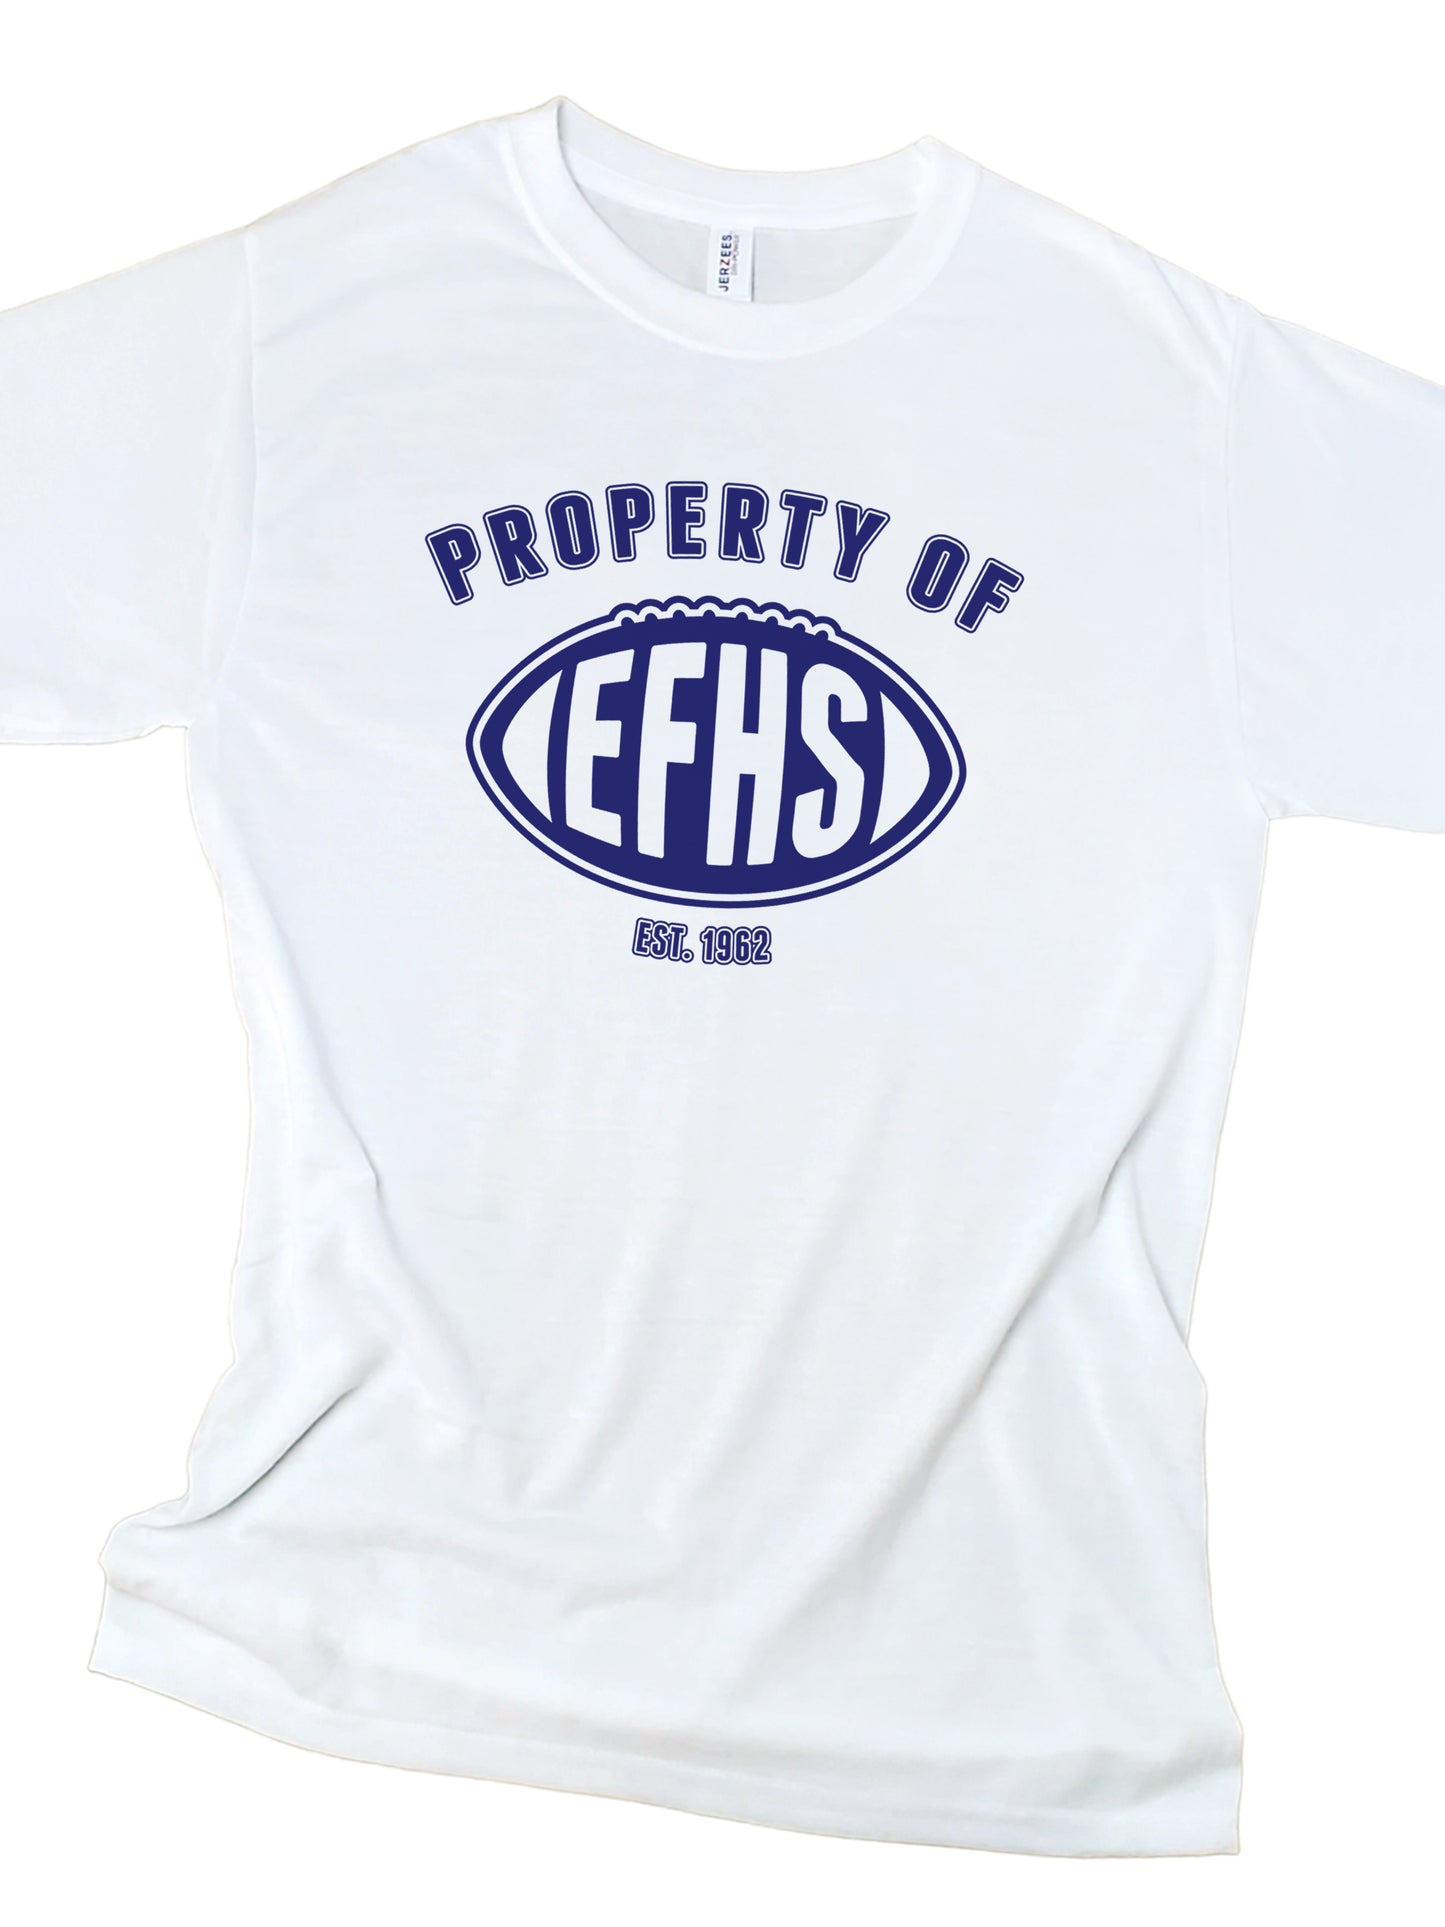 Property of EFHS, Fighting Eagles Spirit Wear, East Forsyth High School Spirit Wear